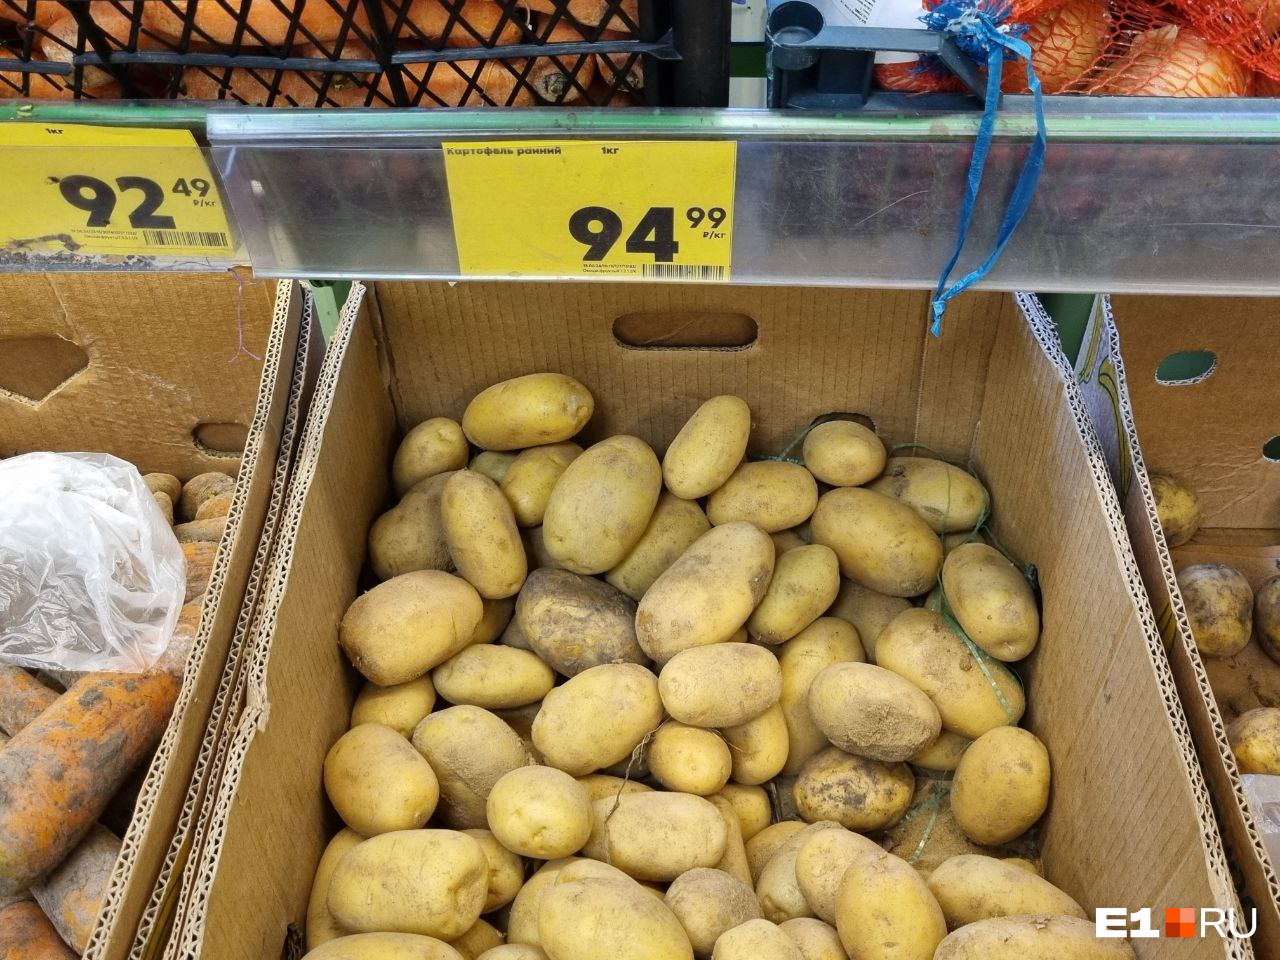 Сотка за килограмм? В Екатеринбурге взлетели цены на картошку